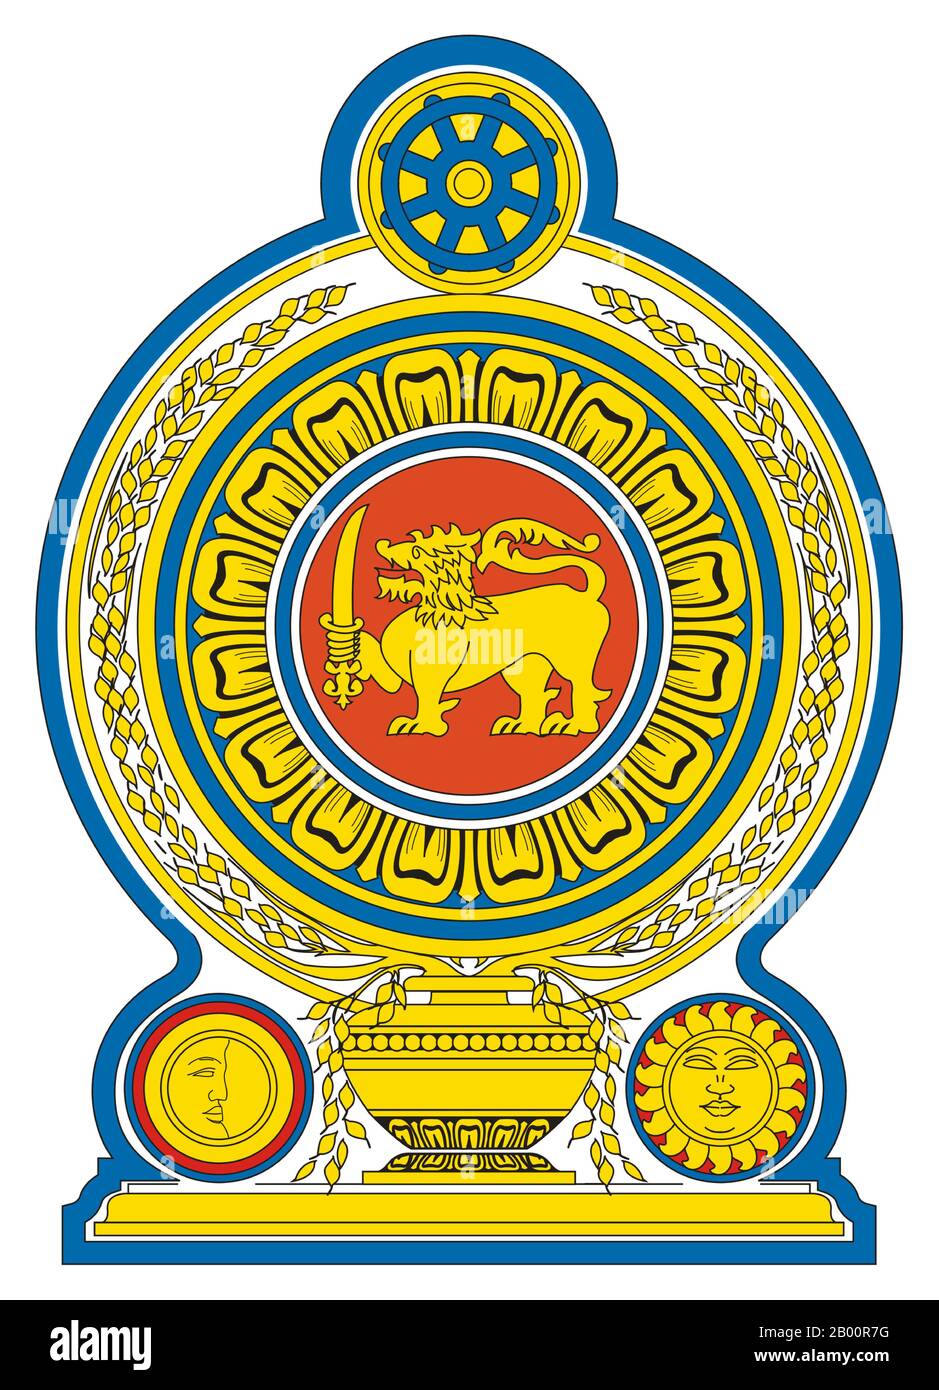 Sri Lanka : crête de la République socialiste démocratique de Sri Lanka, 1972 - aujourd'hui. Les armoiries sont ornées d'un passant de lion d'or, tenant une épée dans sa patte avant droite (le même lion du drapeau du Sri Lanka) au centre sur un fond marron entouré de pétales d'or d'un Lotus bleu la fleur nationale du pays. Ceci est placé sur un vase à grains traditionnel qui jouvent des gerbes de grains de riz qui encerclent la frontière reflétant la prospérité. La crête est le Dharmacakra, symbolisant l'endroit le plus important du pays pour le bouddhisme et la règle juste. Banque D'Images